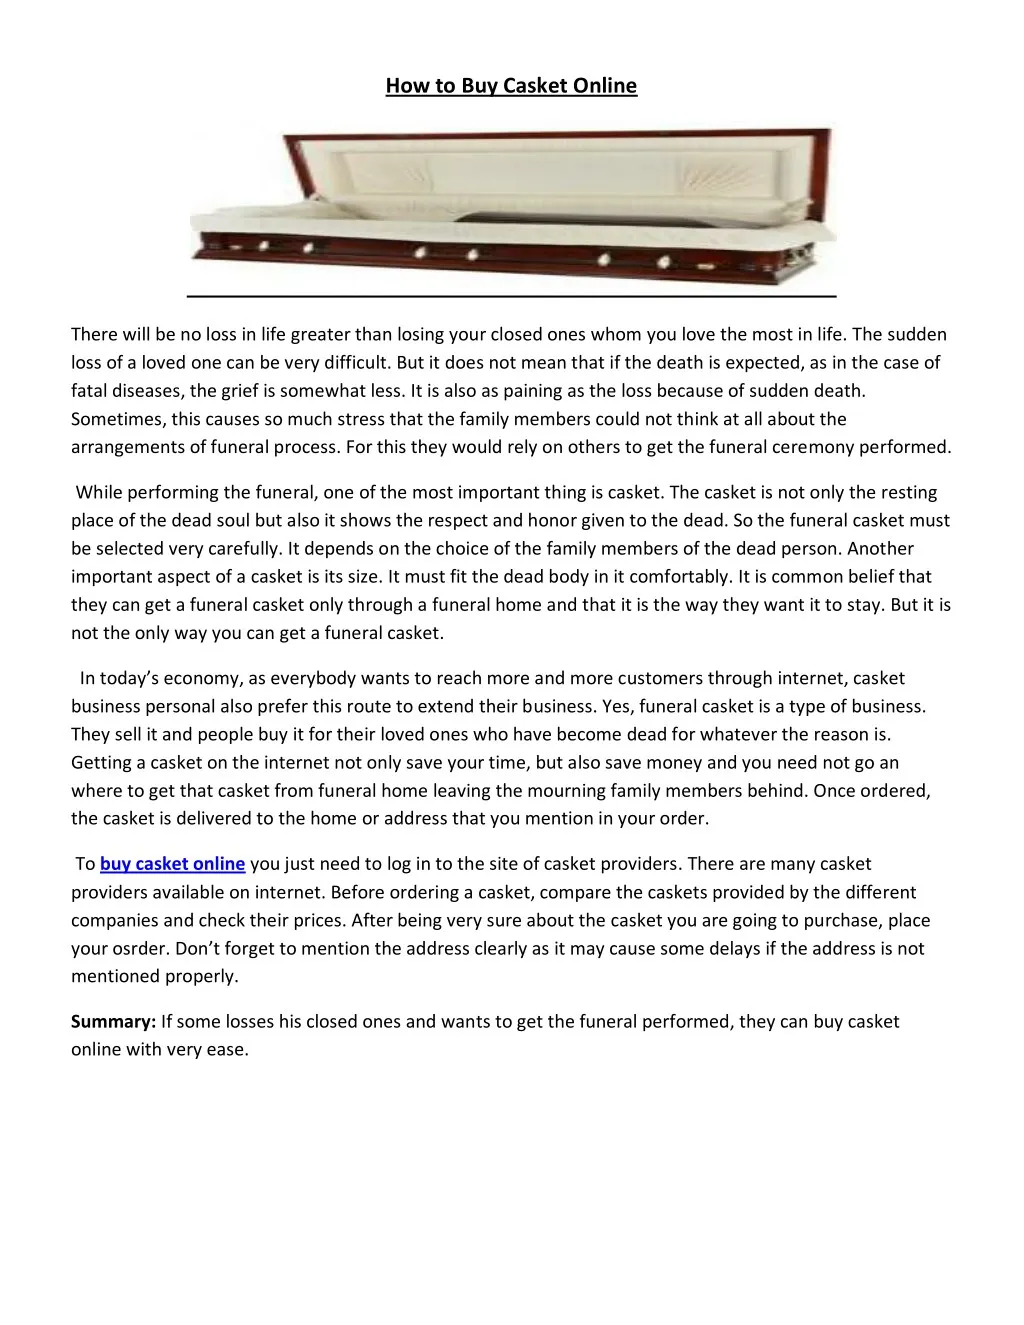 how to buy casket online